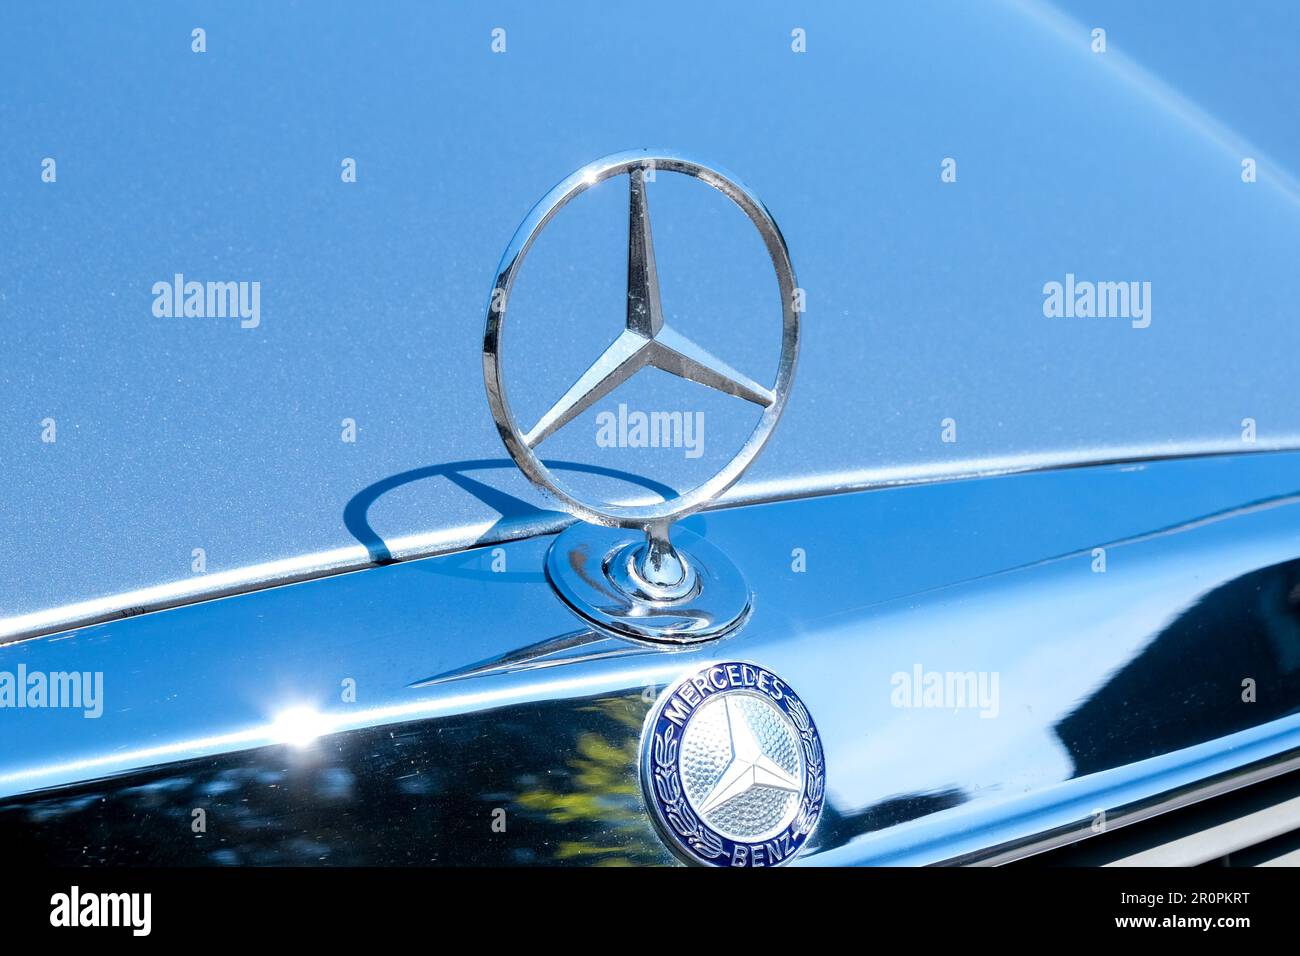 Gros plan de l'ancien logo en forme d'étoile métallique de Mercedes Benz sur le capot de la voiture. Mise au point sélective de l'ancien logo Mercedes. Banque D'Images